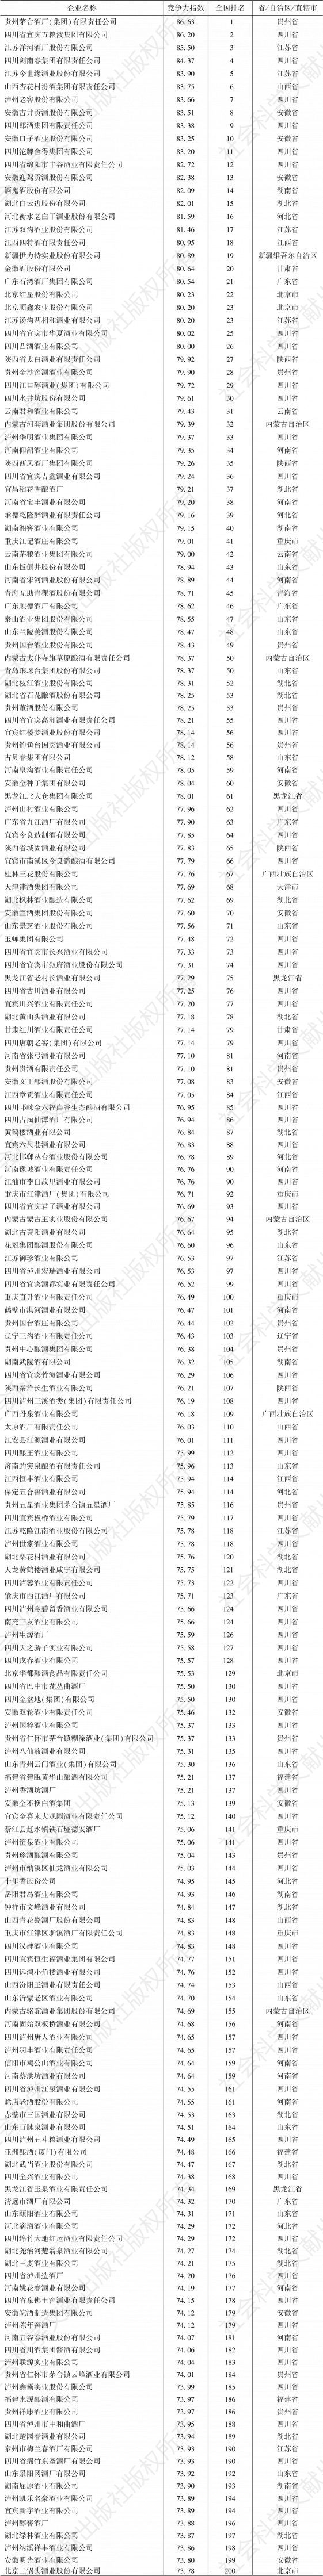 表1-4 中国白酒企业竞争力指数200强情况